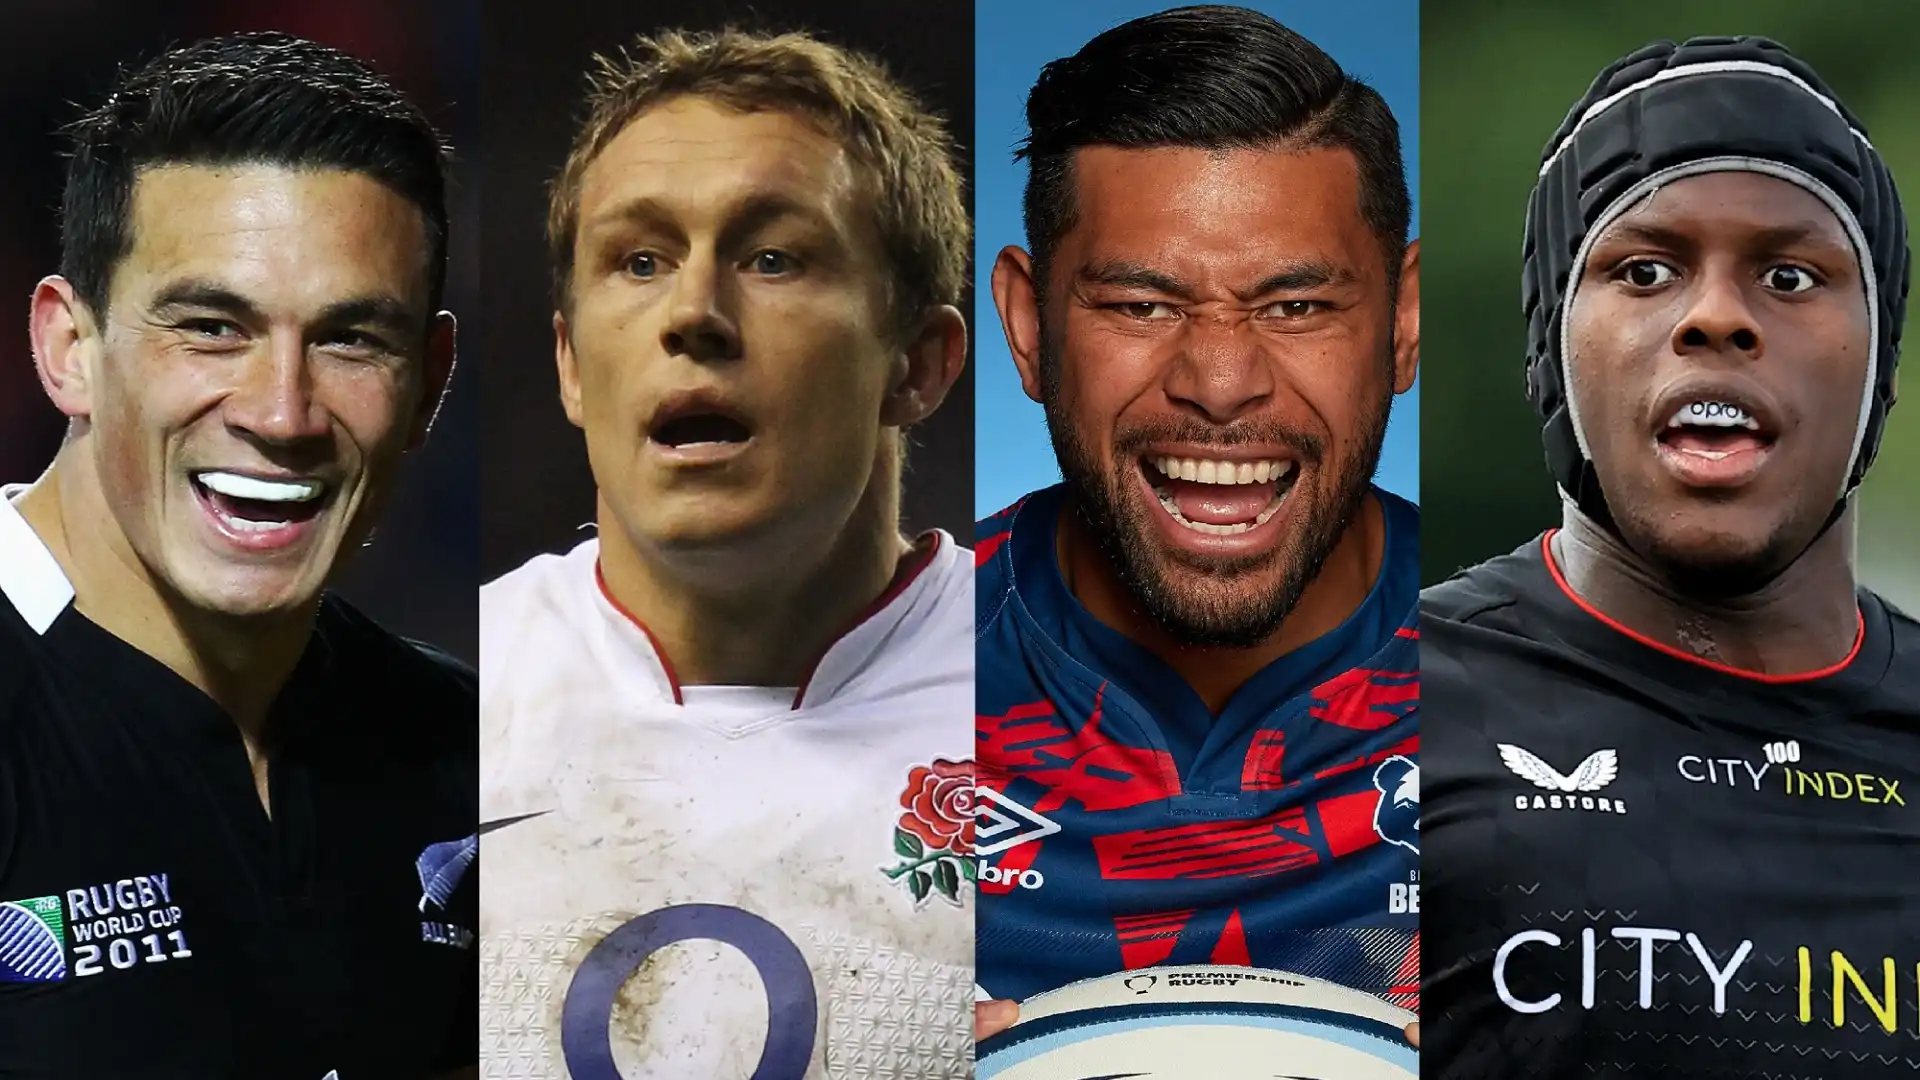 Una classifica dei giocatori ed ex giocatori di rugby più ricchi del pianeta.